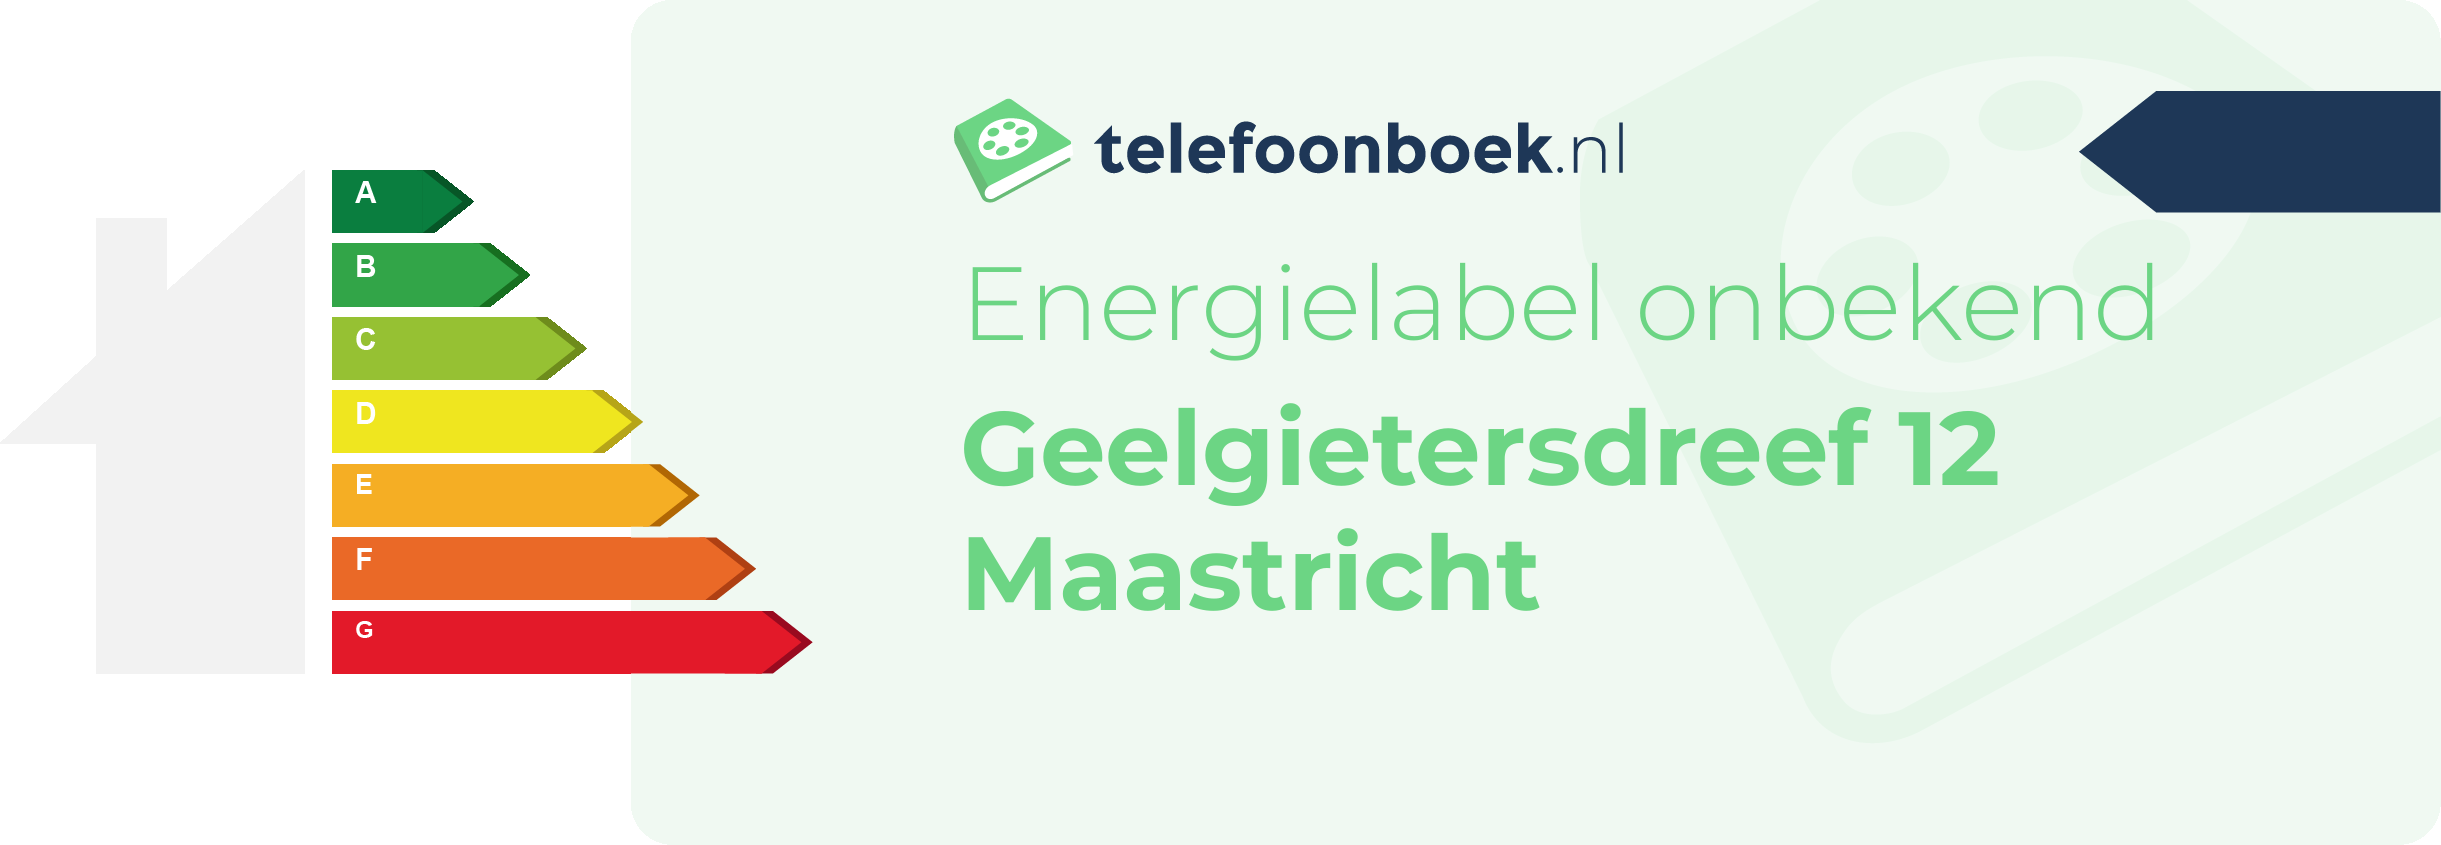 Energielabel Geelgietersdreef 12 Maastricht